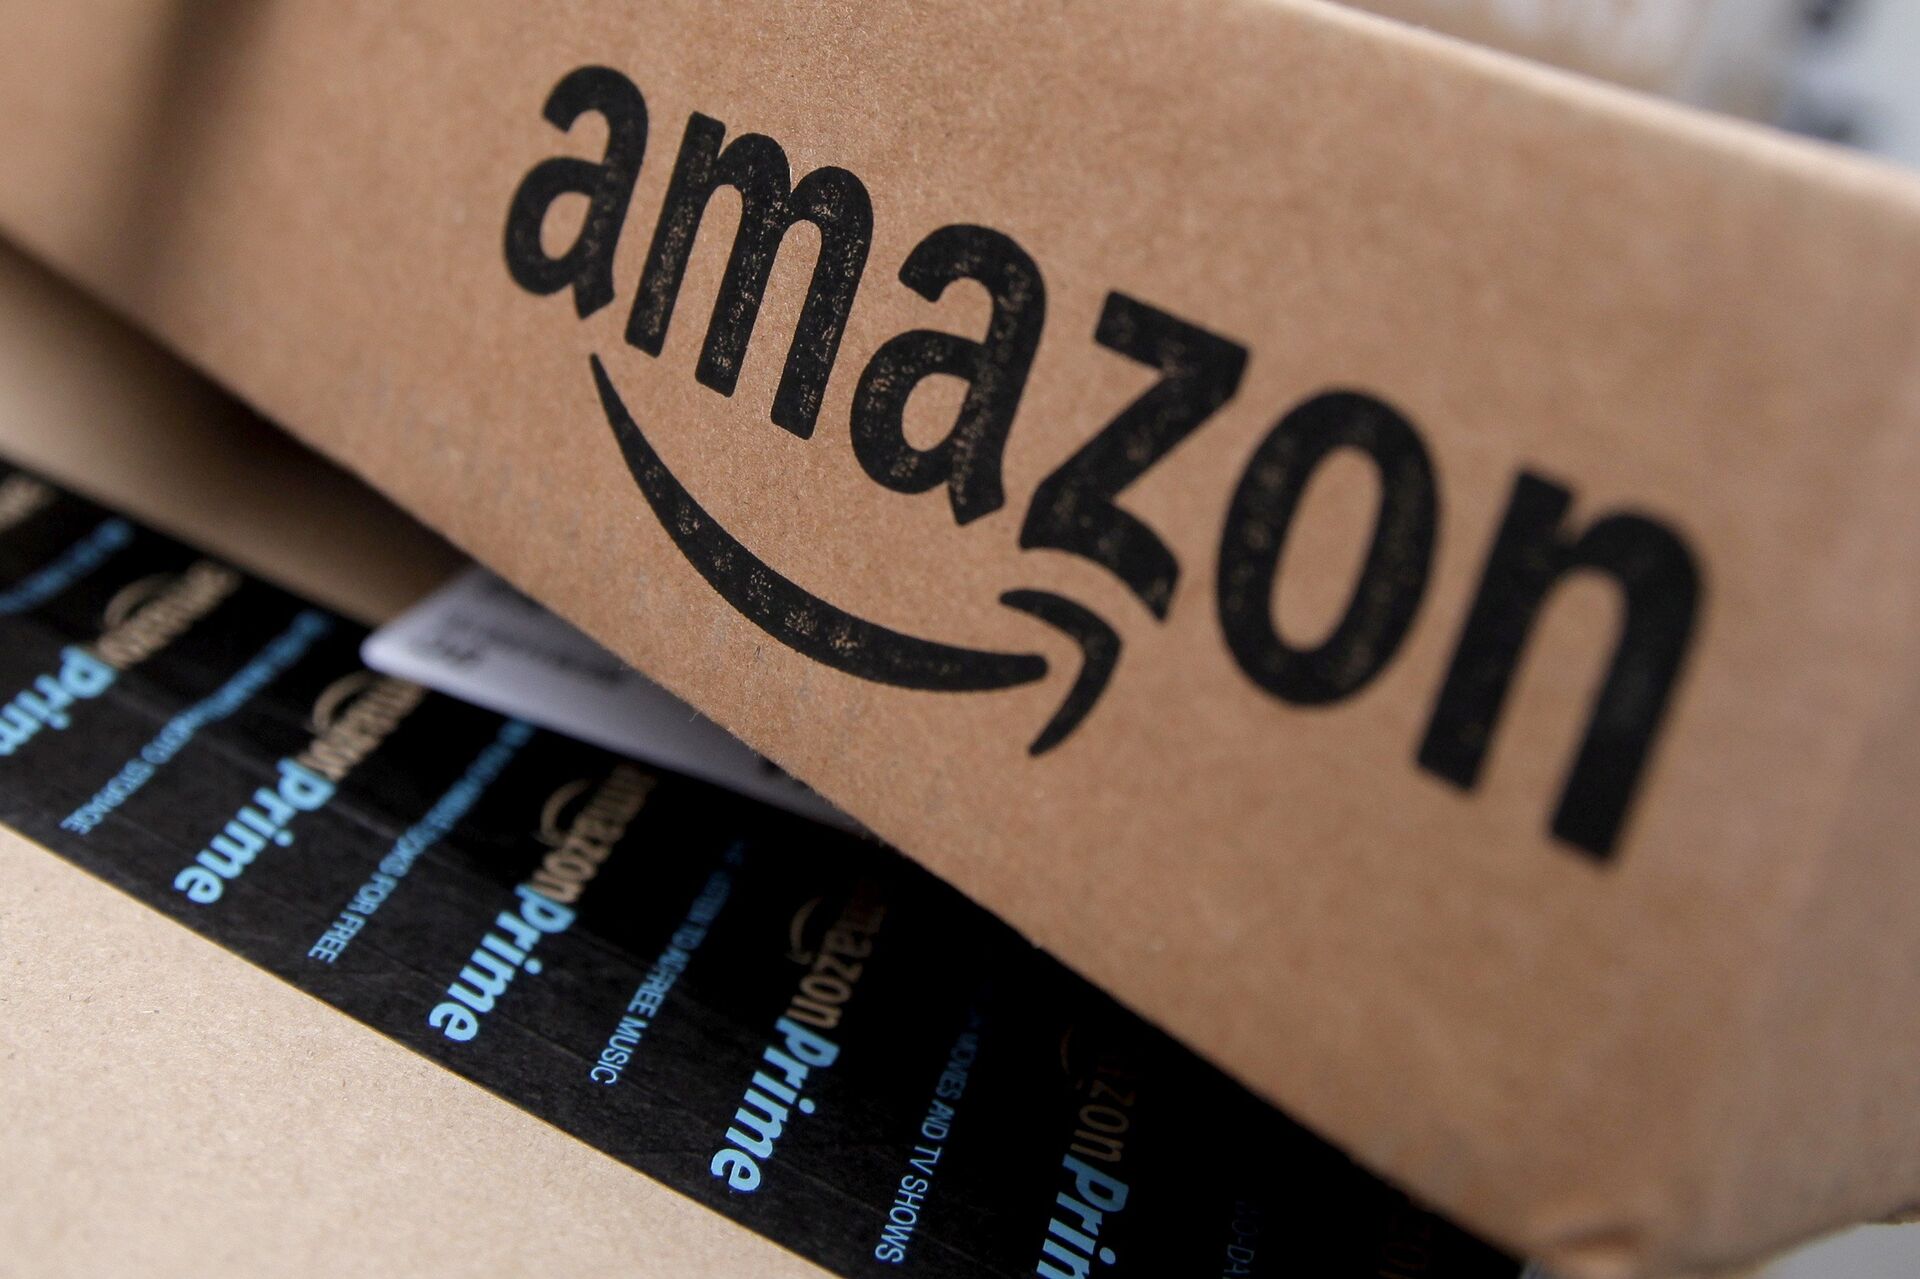 Jeff Bezos deixará cargo de CEO da Amazon - Sputnik Brasil, 1920, 02.02.2021